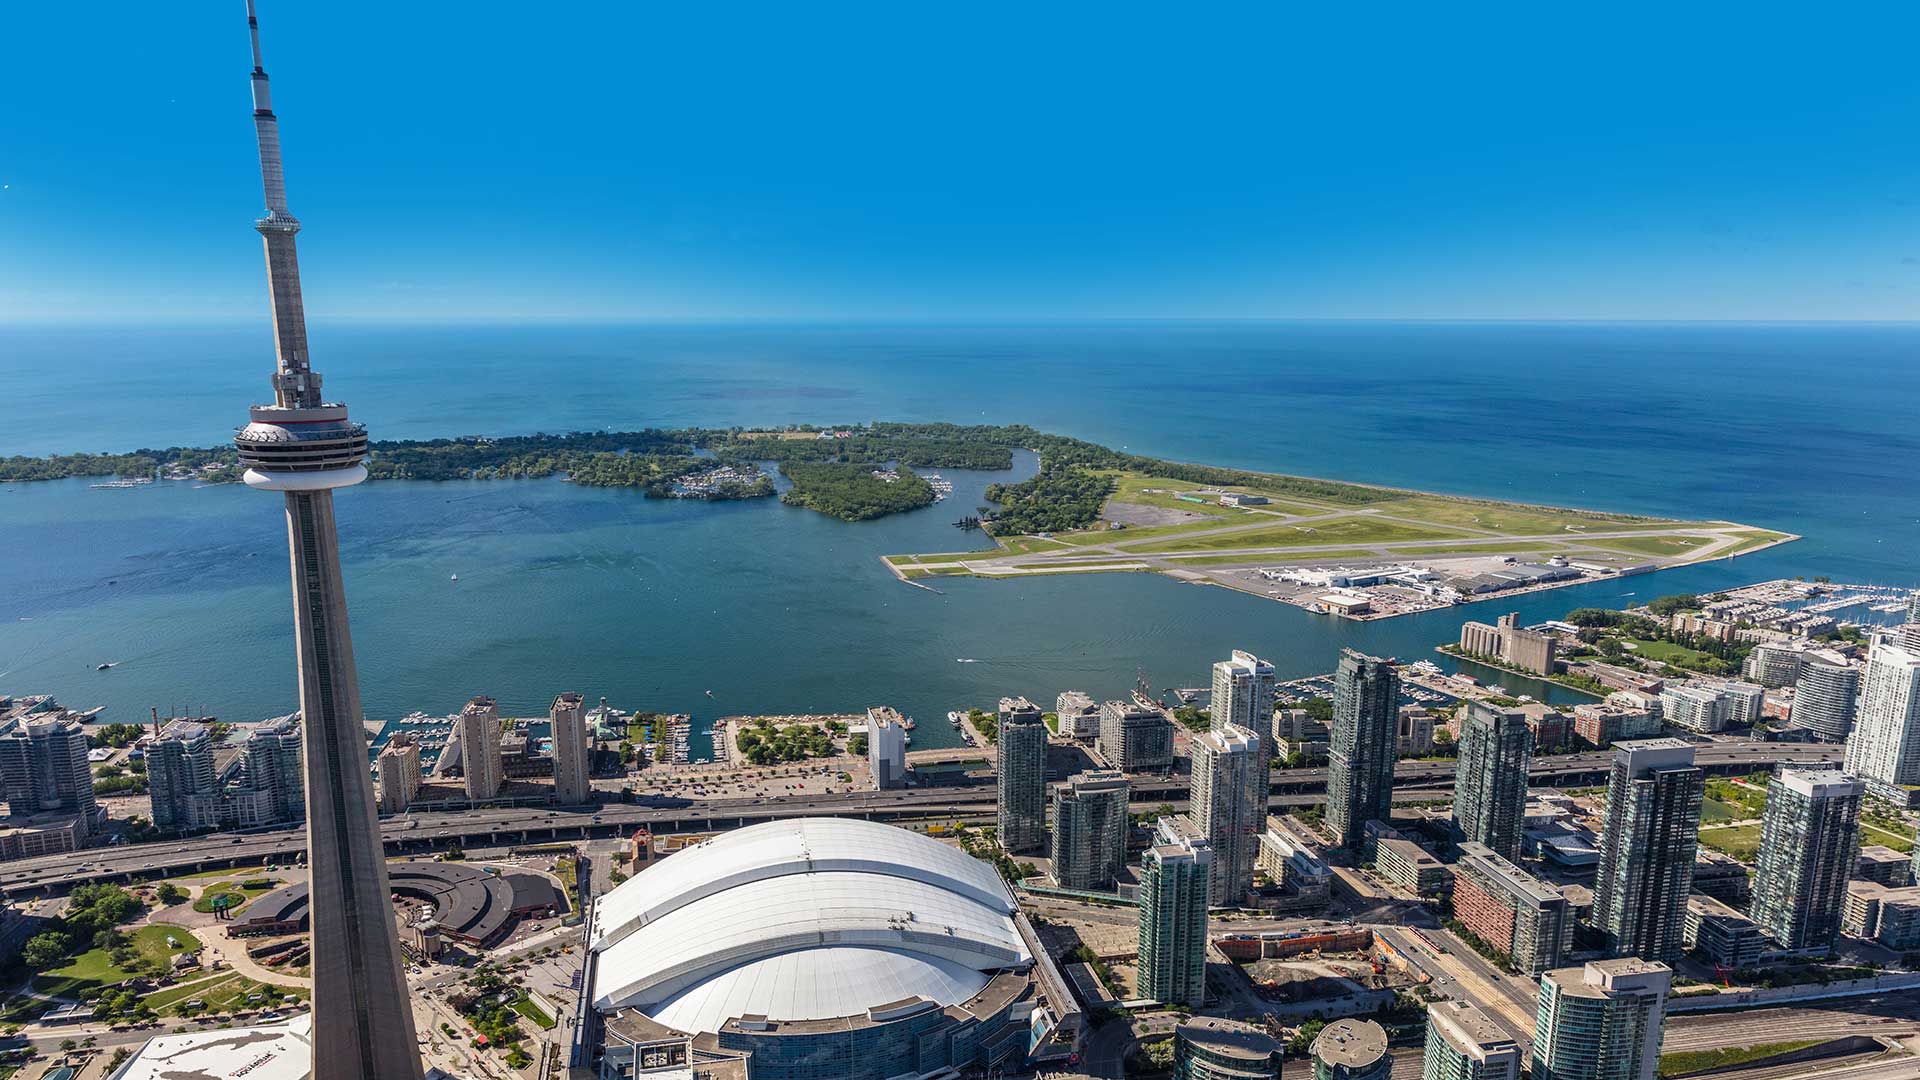 À l’Aéroport Billy Bishop de Toronto, une nouvelle exposition permanente commémore le centenaire de l’Aviation royale canadienne et la contribution de l’Aéroport à l’histoire de l’aviation au Canada